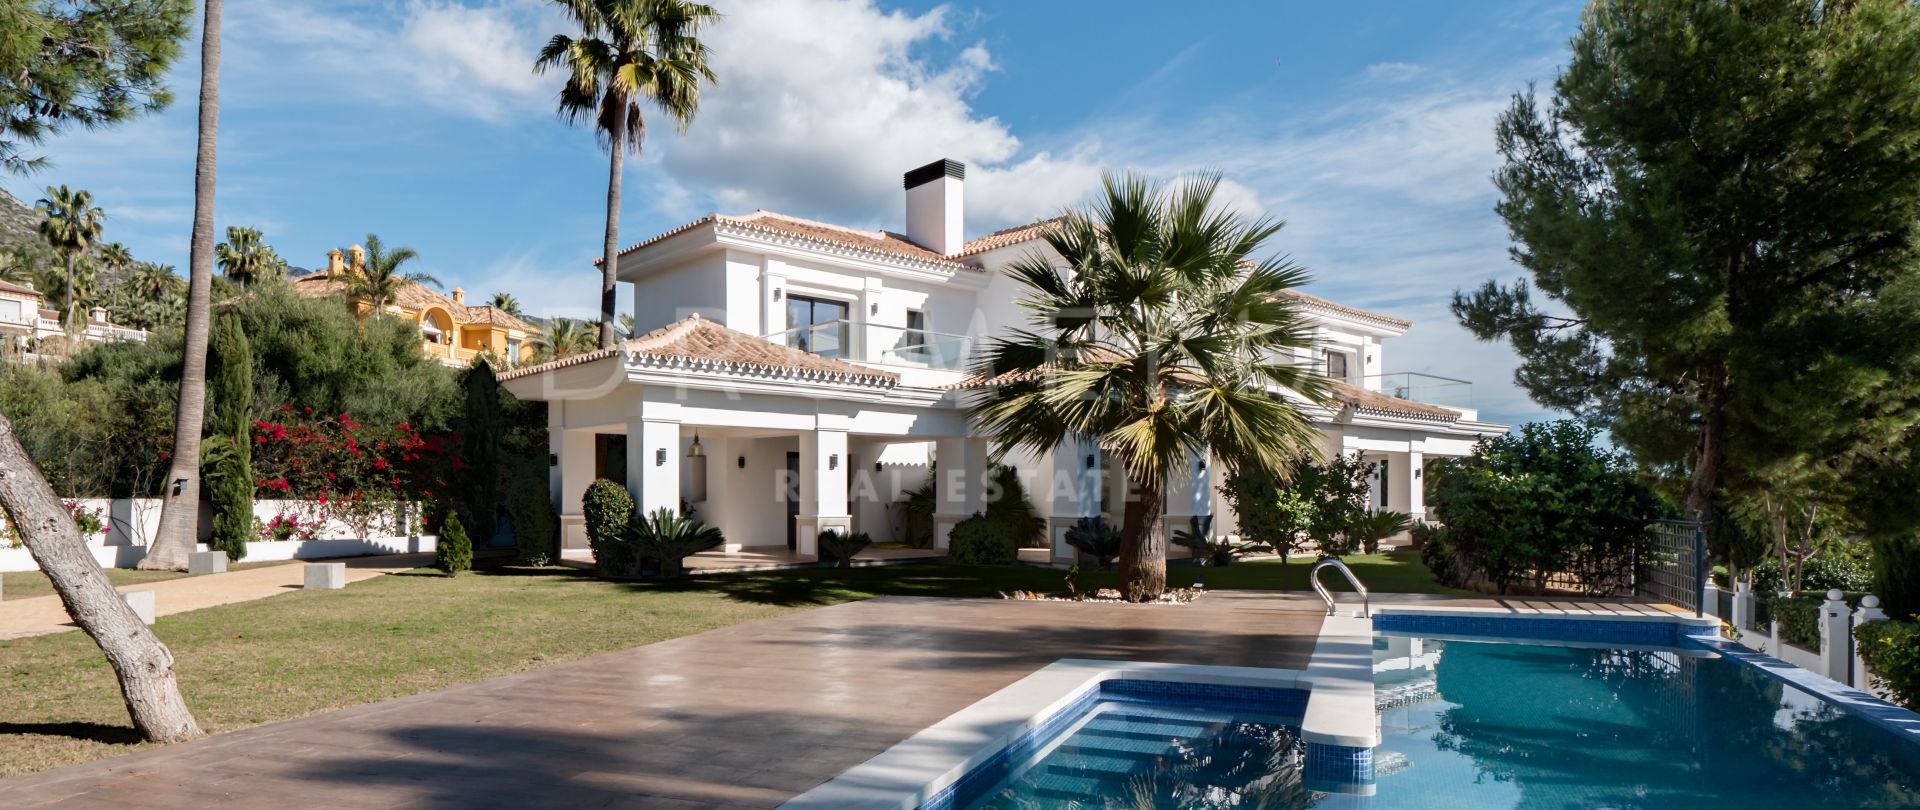 Villa Azure - Neues modernes mediterranes Luxushaus mit exquisitem Look, Sierra Blanca, Marbellas Goldene Meile